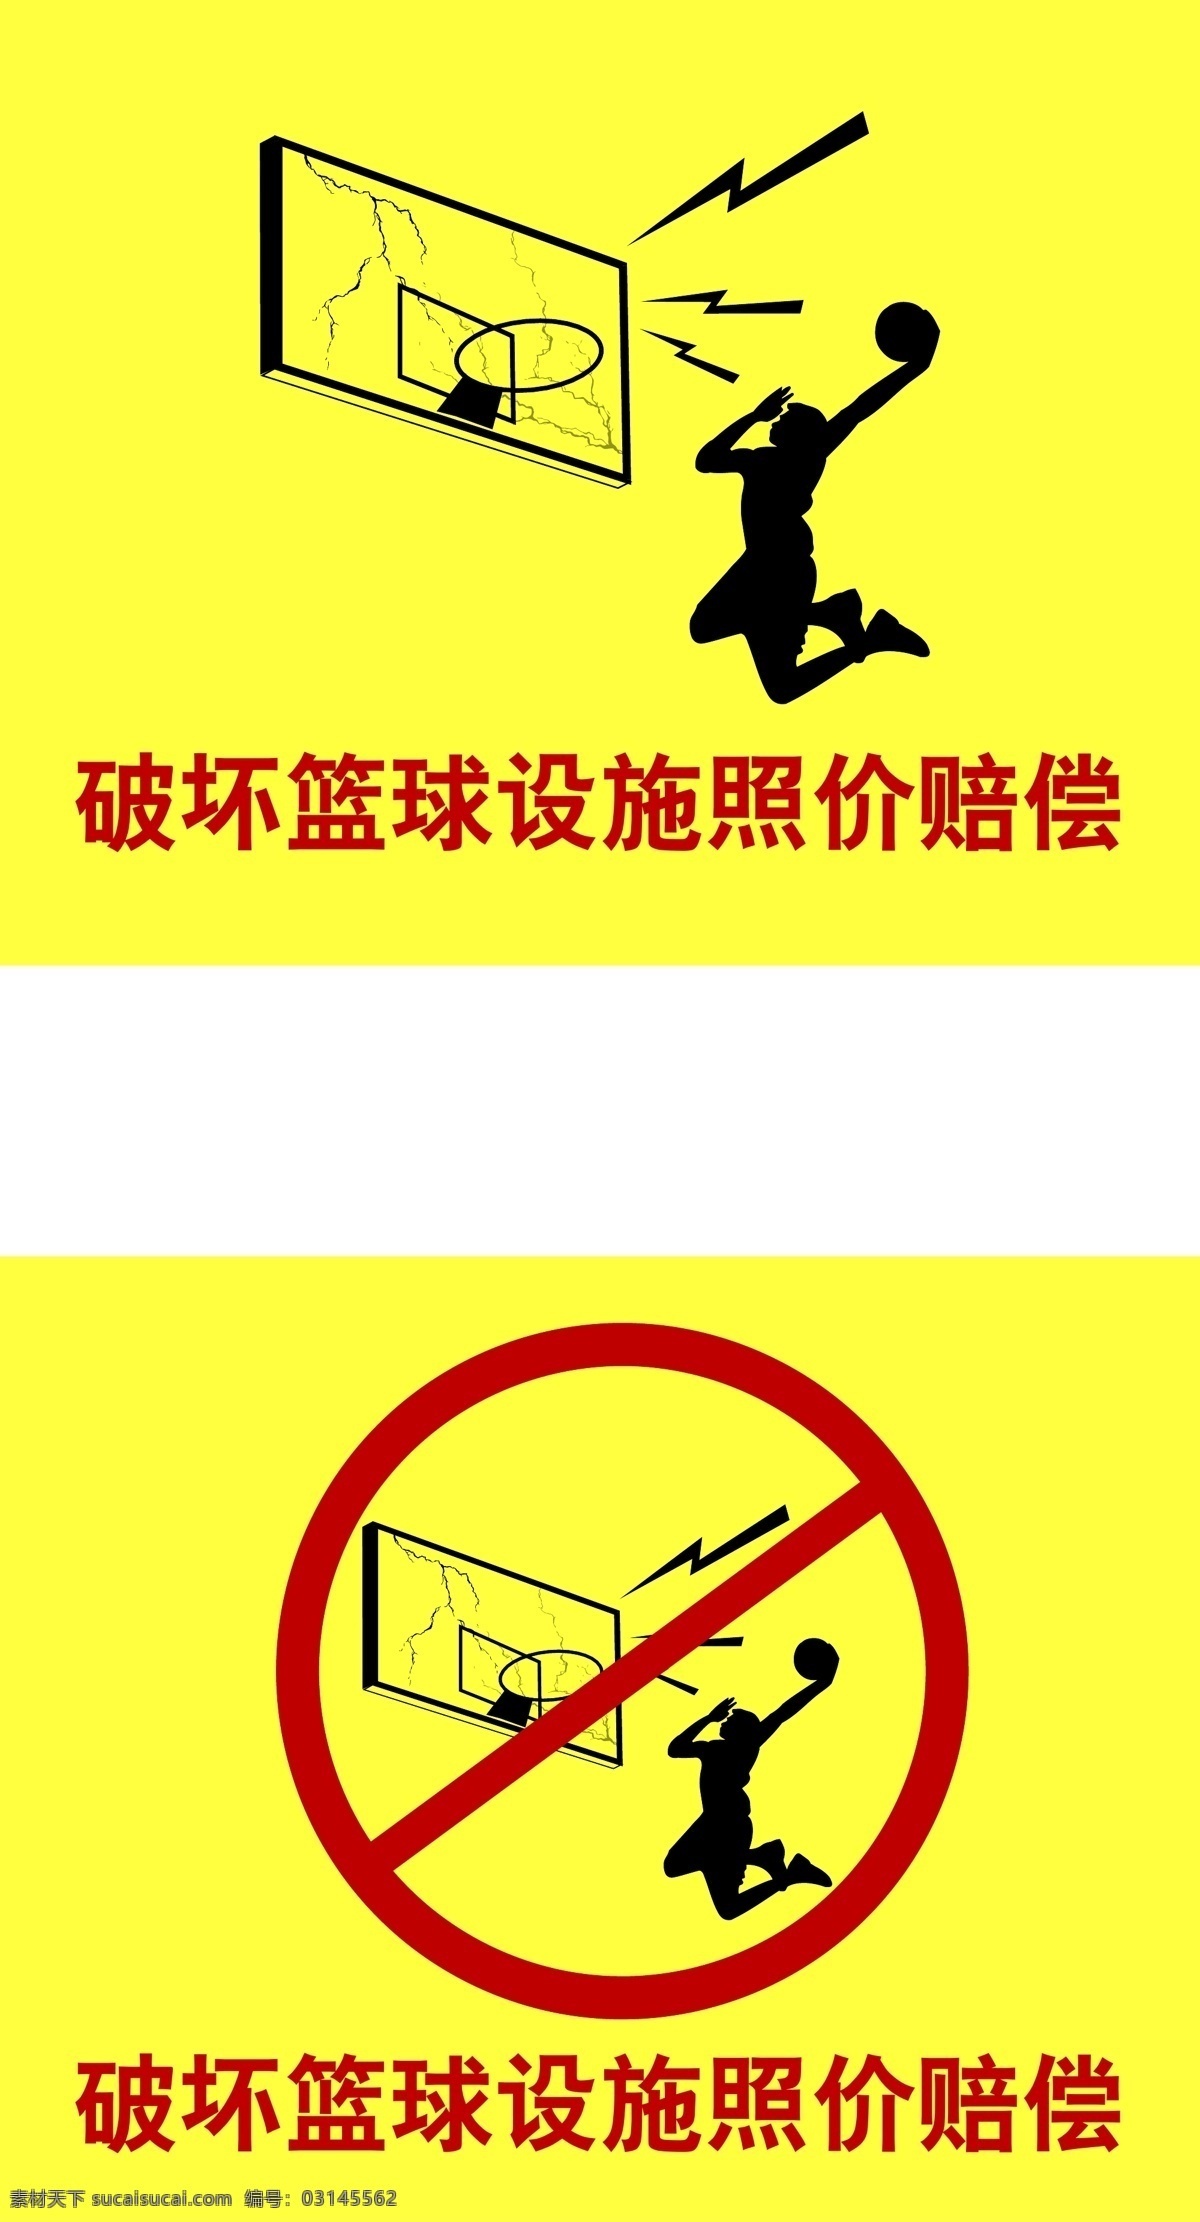 禁止 破坏 篮球 设施 标识 标示 篮球架 体育 运动 矢量图 矢量人物